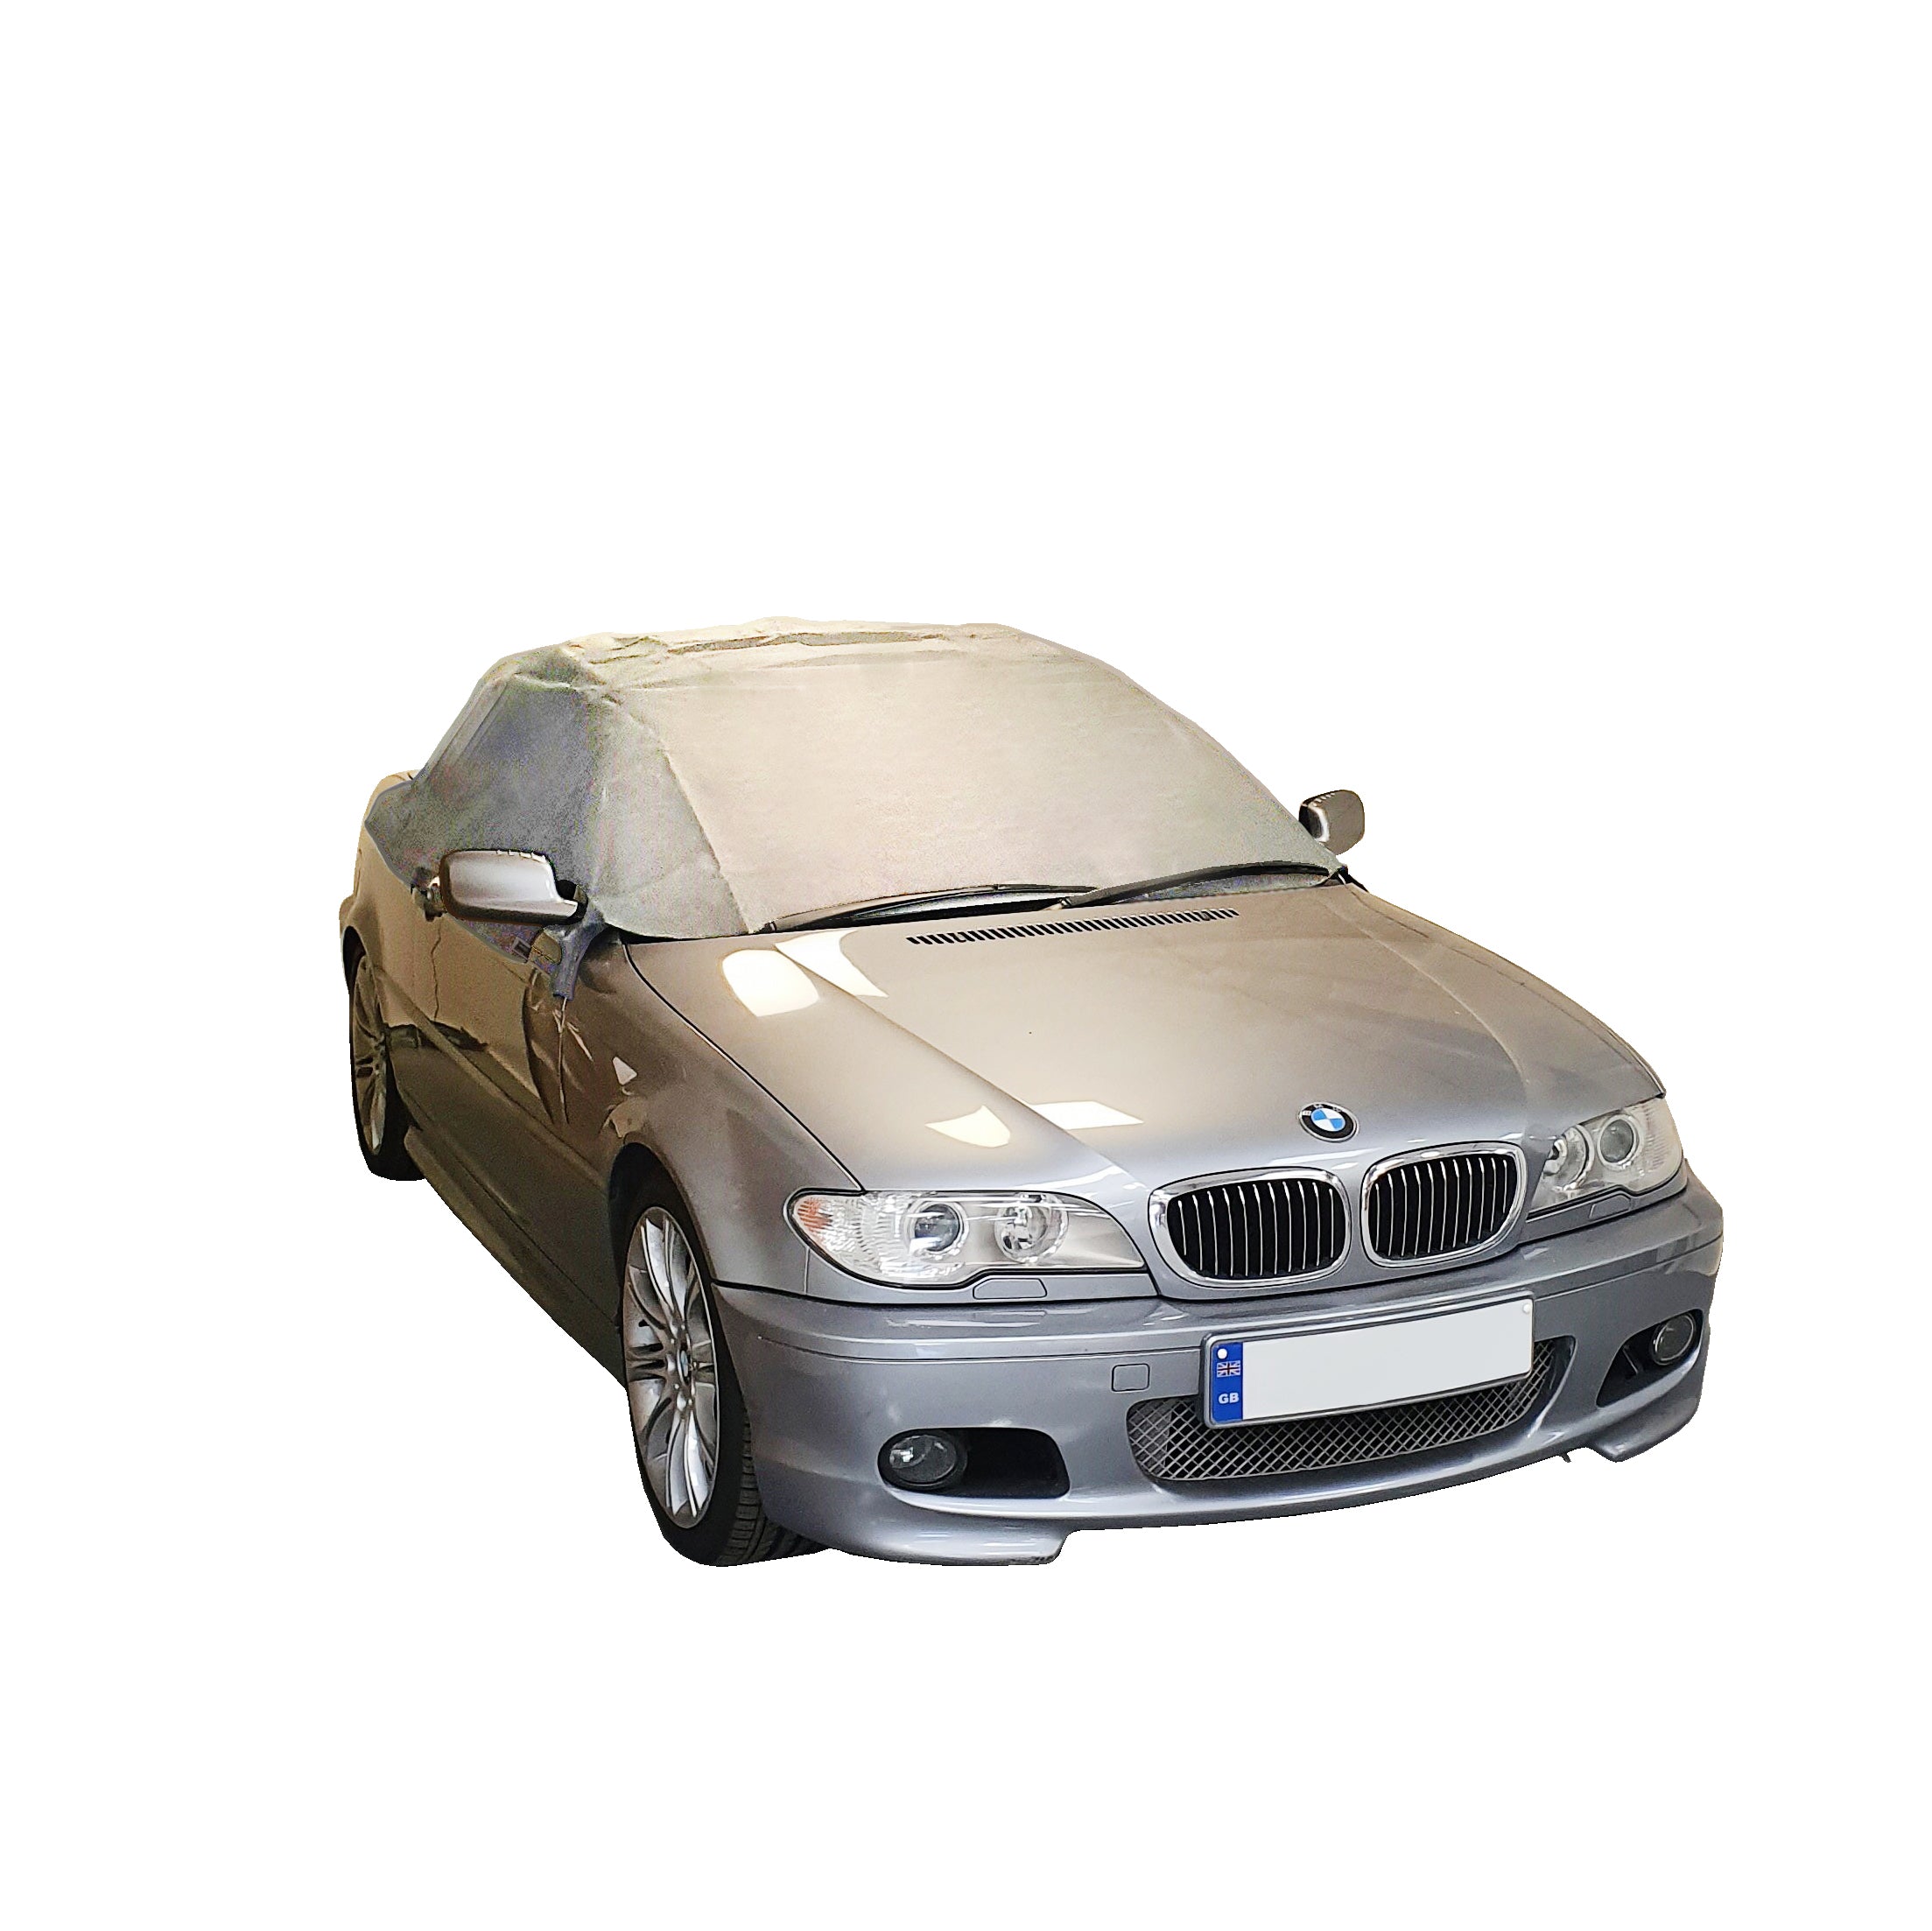 Media cubierta de techo blando para BMW E46 - 1999 a 2005 (571G) - GRIS